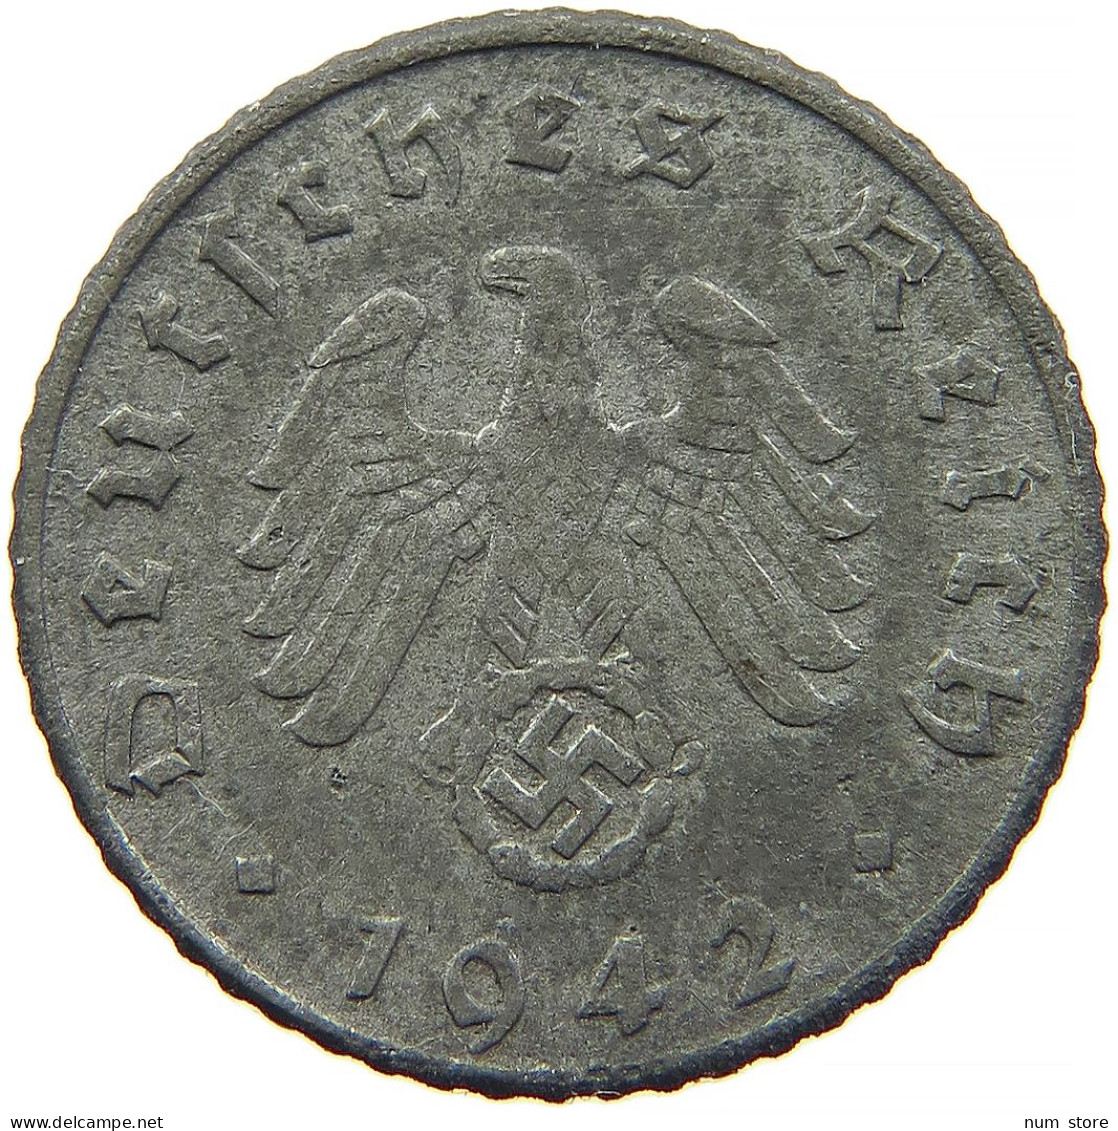 GERMANY 5 REICHSPFENNIG 1942 D #s091 0821 - 5 Reichspfennig